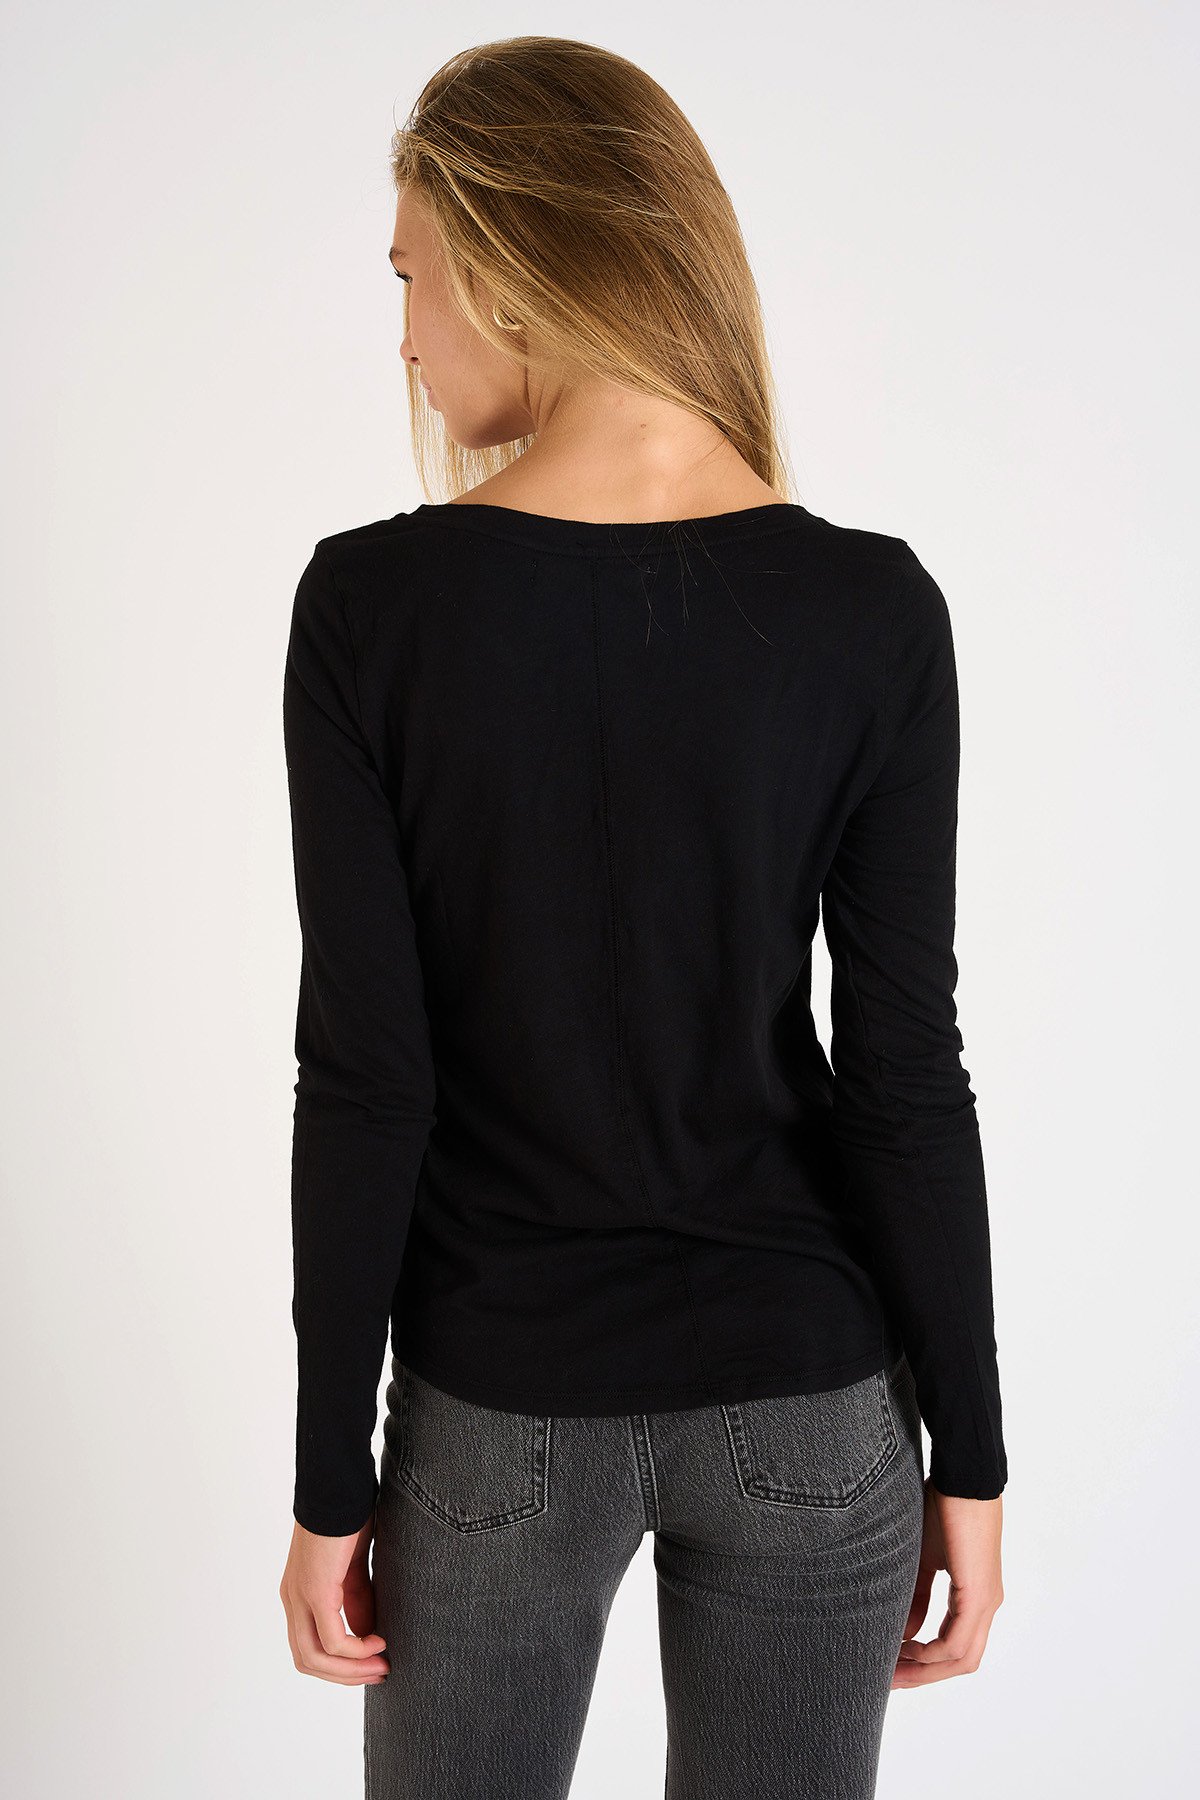 EROE MIDOLI black long-sleeved T-shirt | Banana Moon®